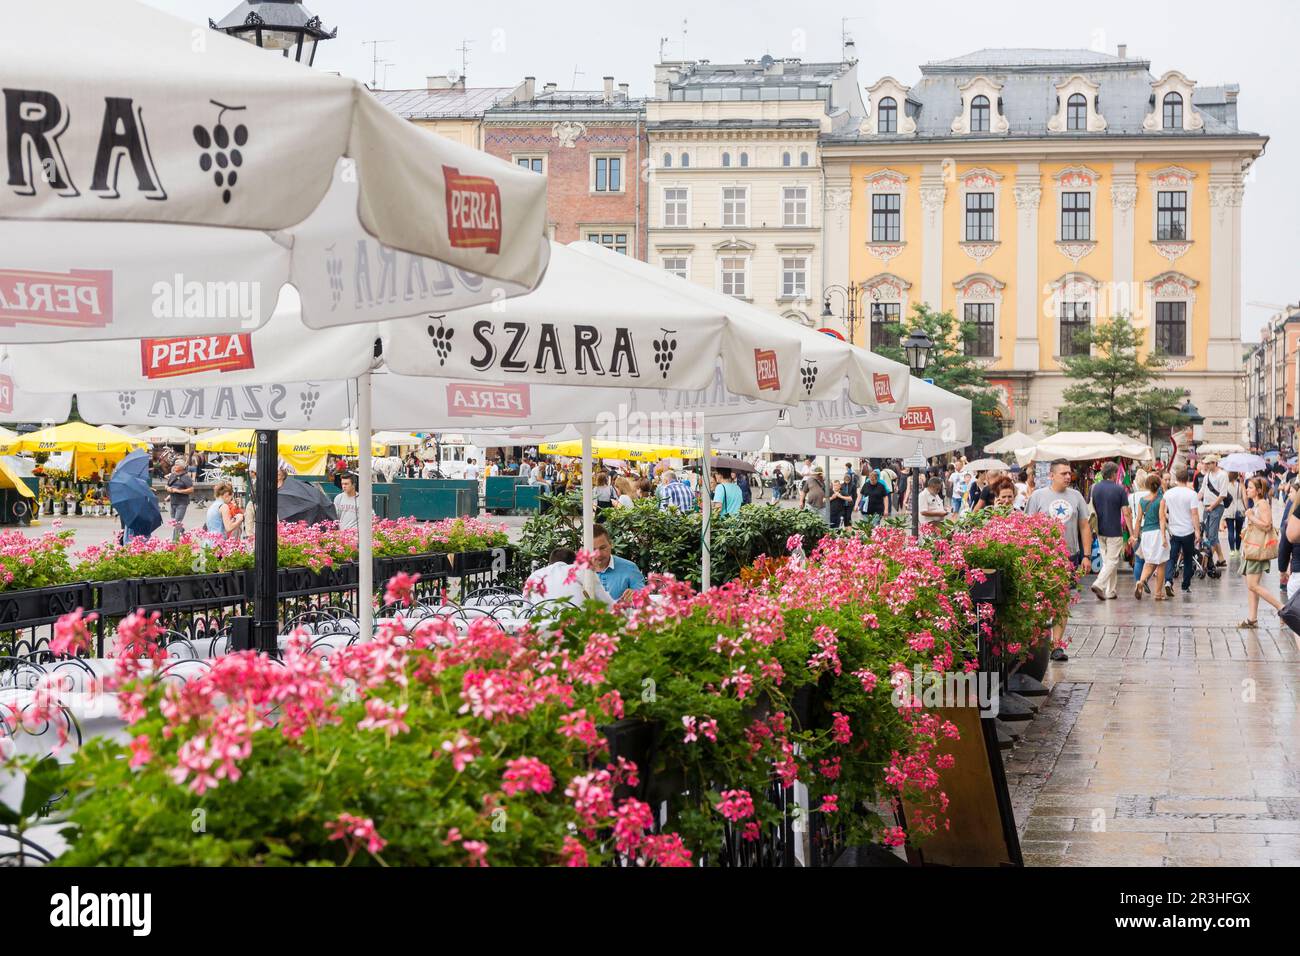 Rynek Gówny , plaza del mercado, Cracovia , voivodato de Pequeña Polonia,Polonia, eastern europe. Stock Photo